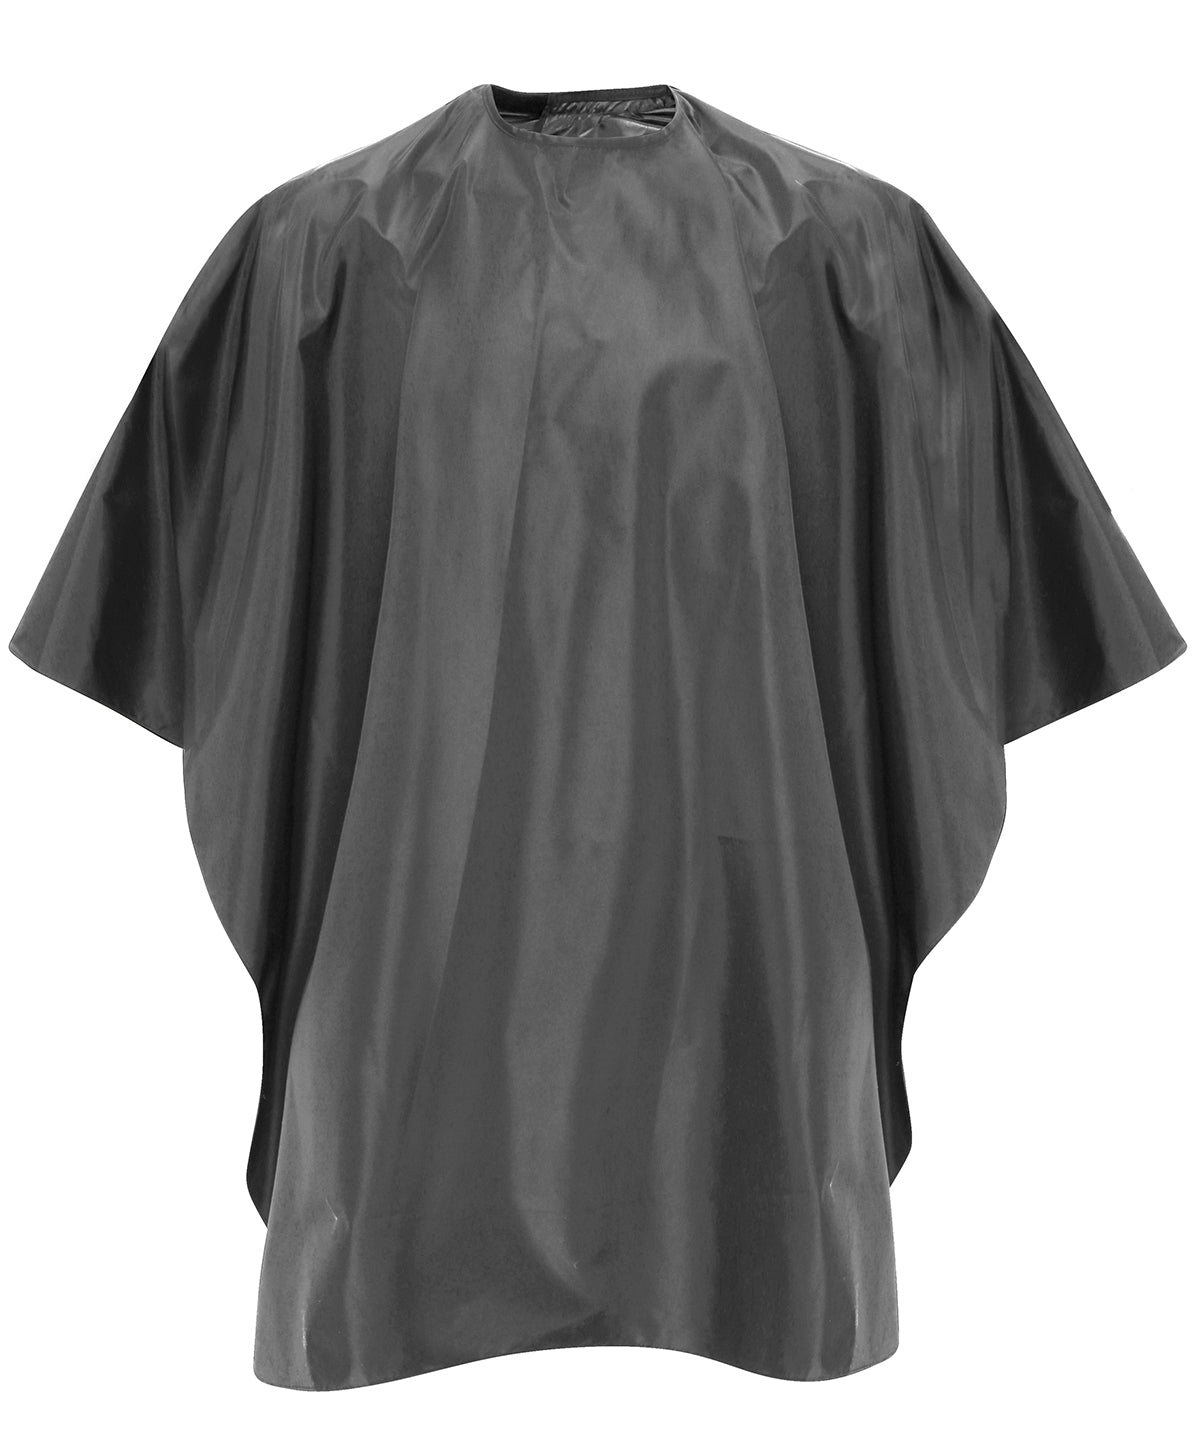 Kjólar - Waterproof Salon Gown